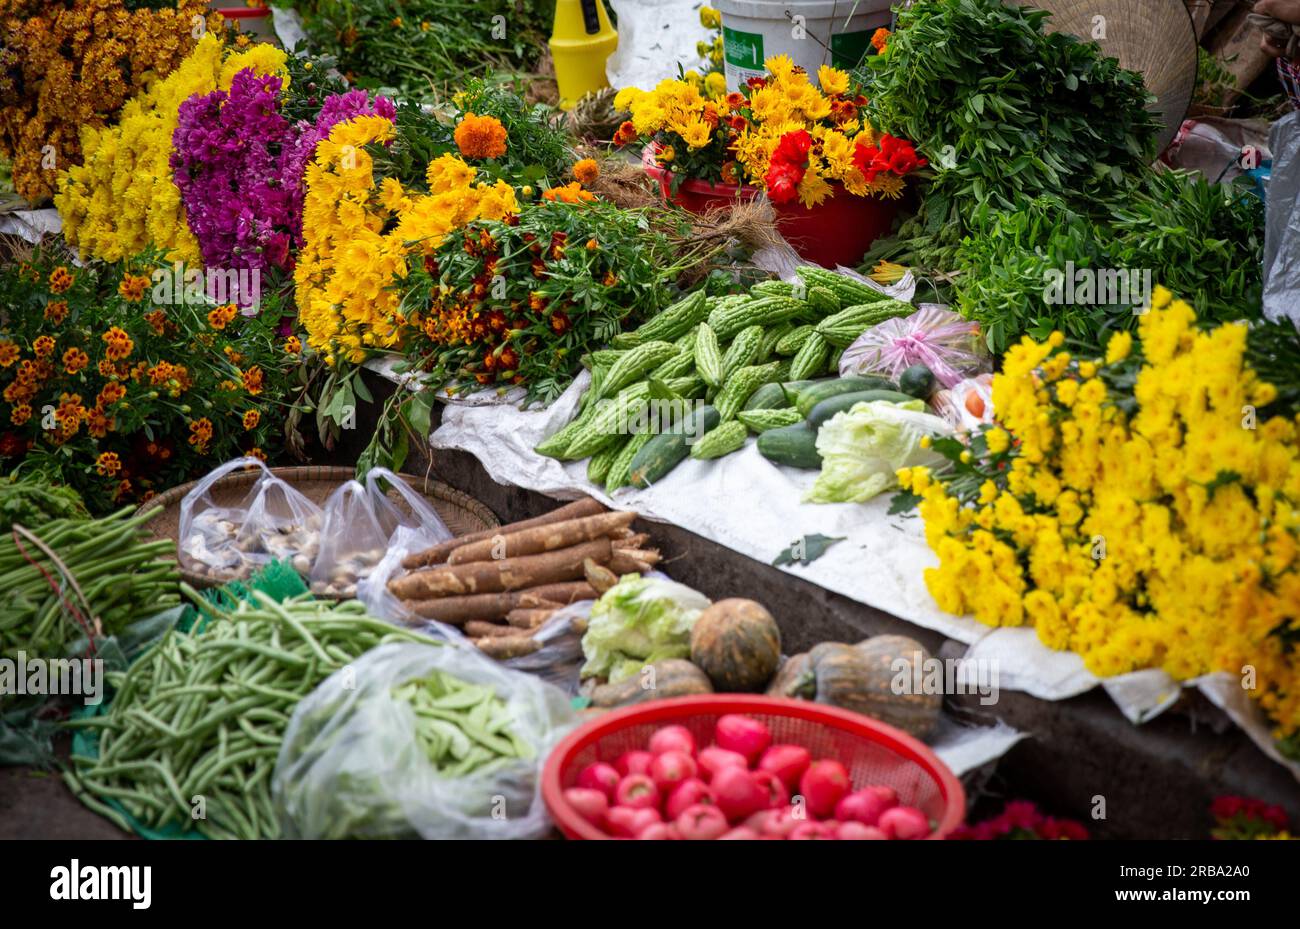 Obst, Gemüse und Blumen in einem Verkaufsstand Stockfoto